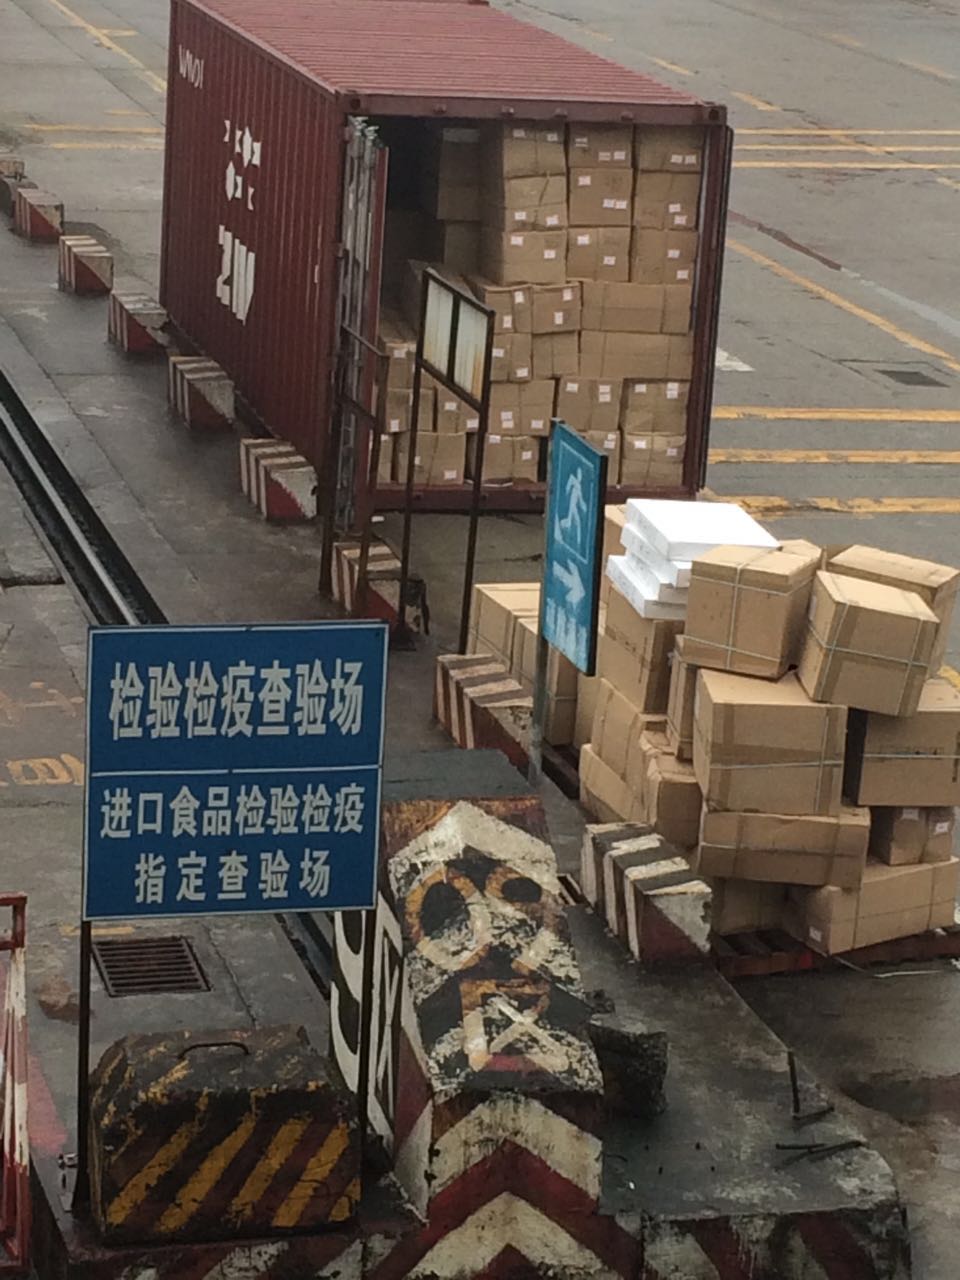 进口饮料果汁代理清关公司 广州黄埔港海运进口食品清关 一般贸易进口报关